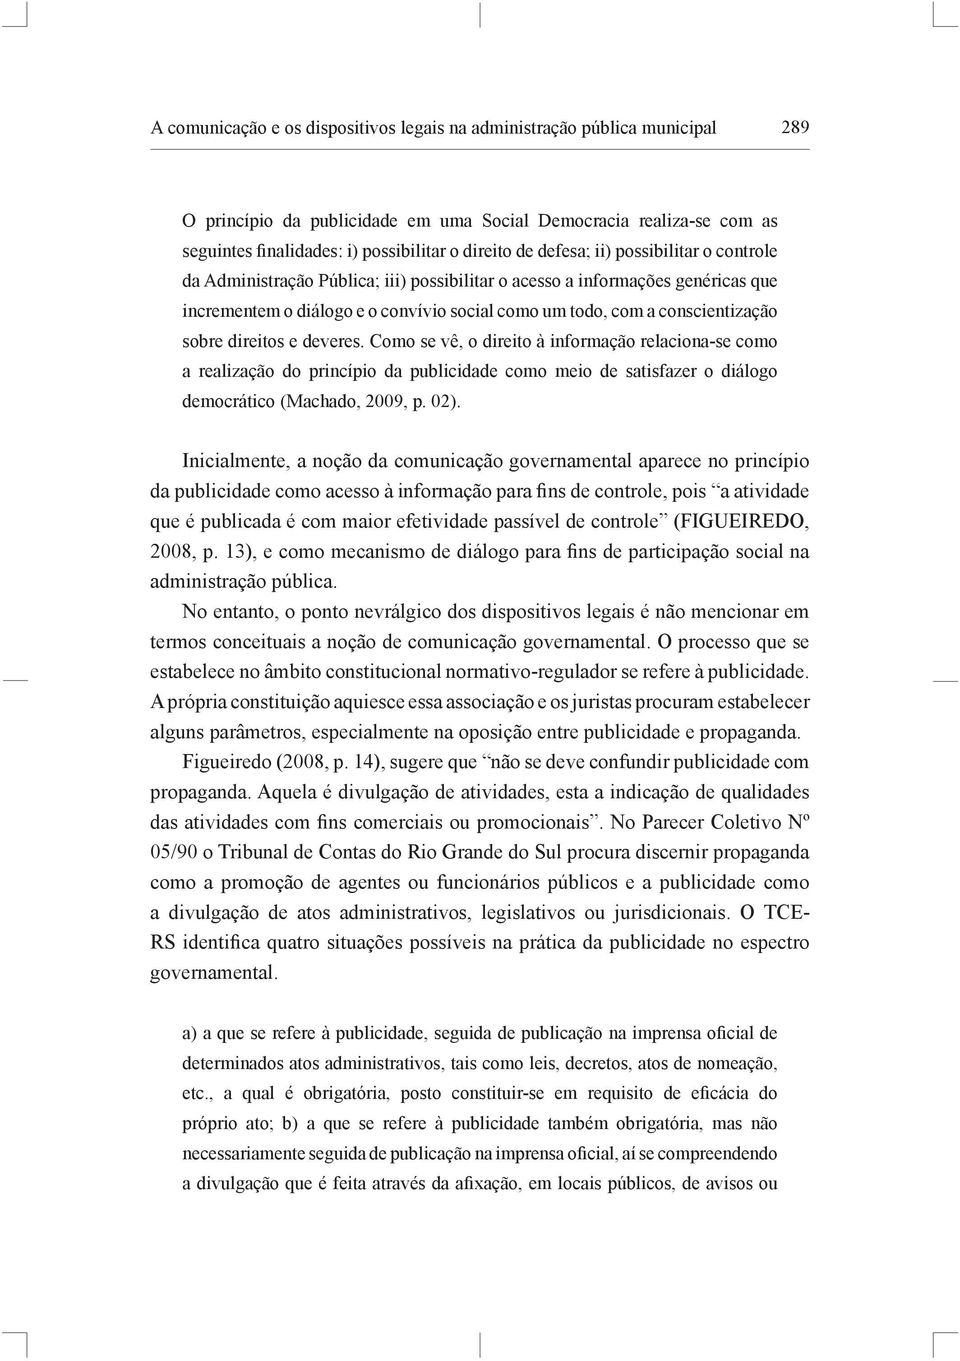 sobre direitos e deveres. Como se vê, o direito à informação relaciona-se como a realização do princípio da publicidade como meio de satisfazer o diálogo democrático (Machado, 2009, p. 02).